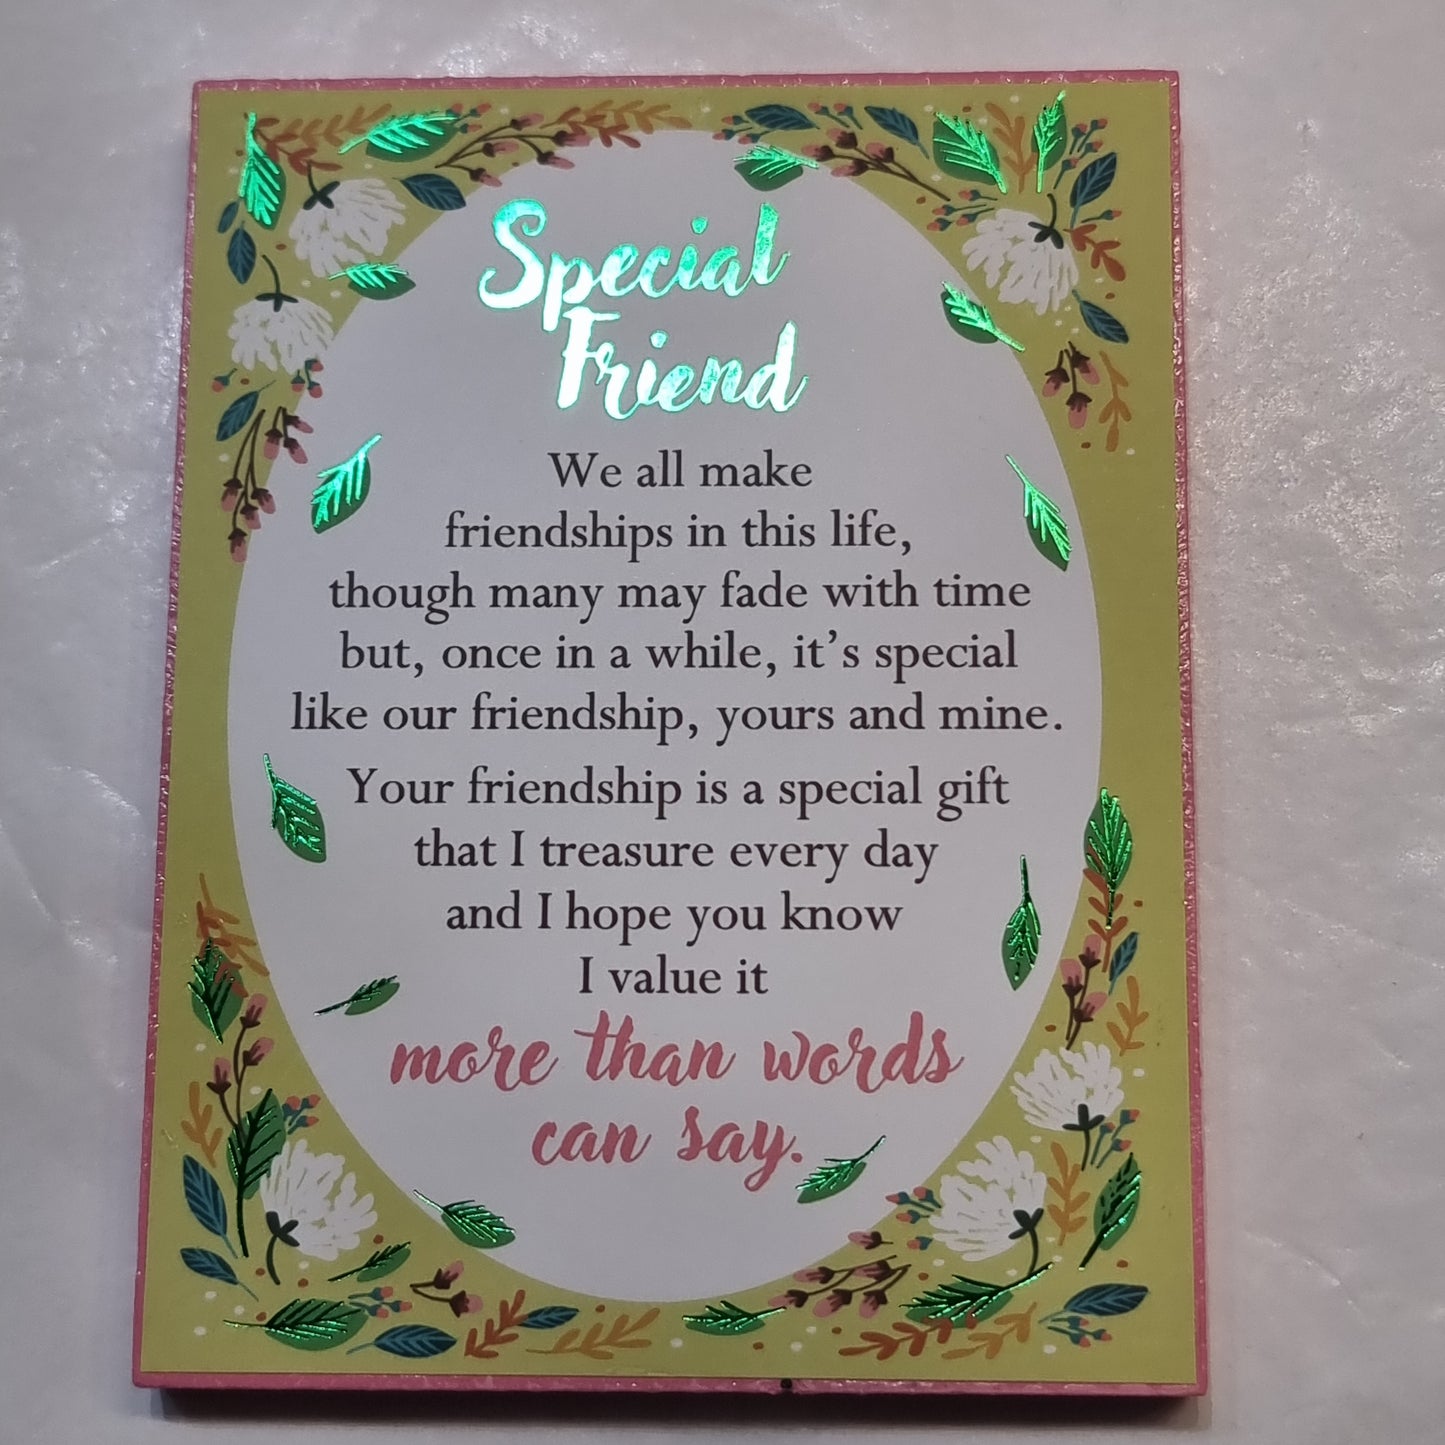 Special friend plaque - Rivendell Shop